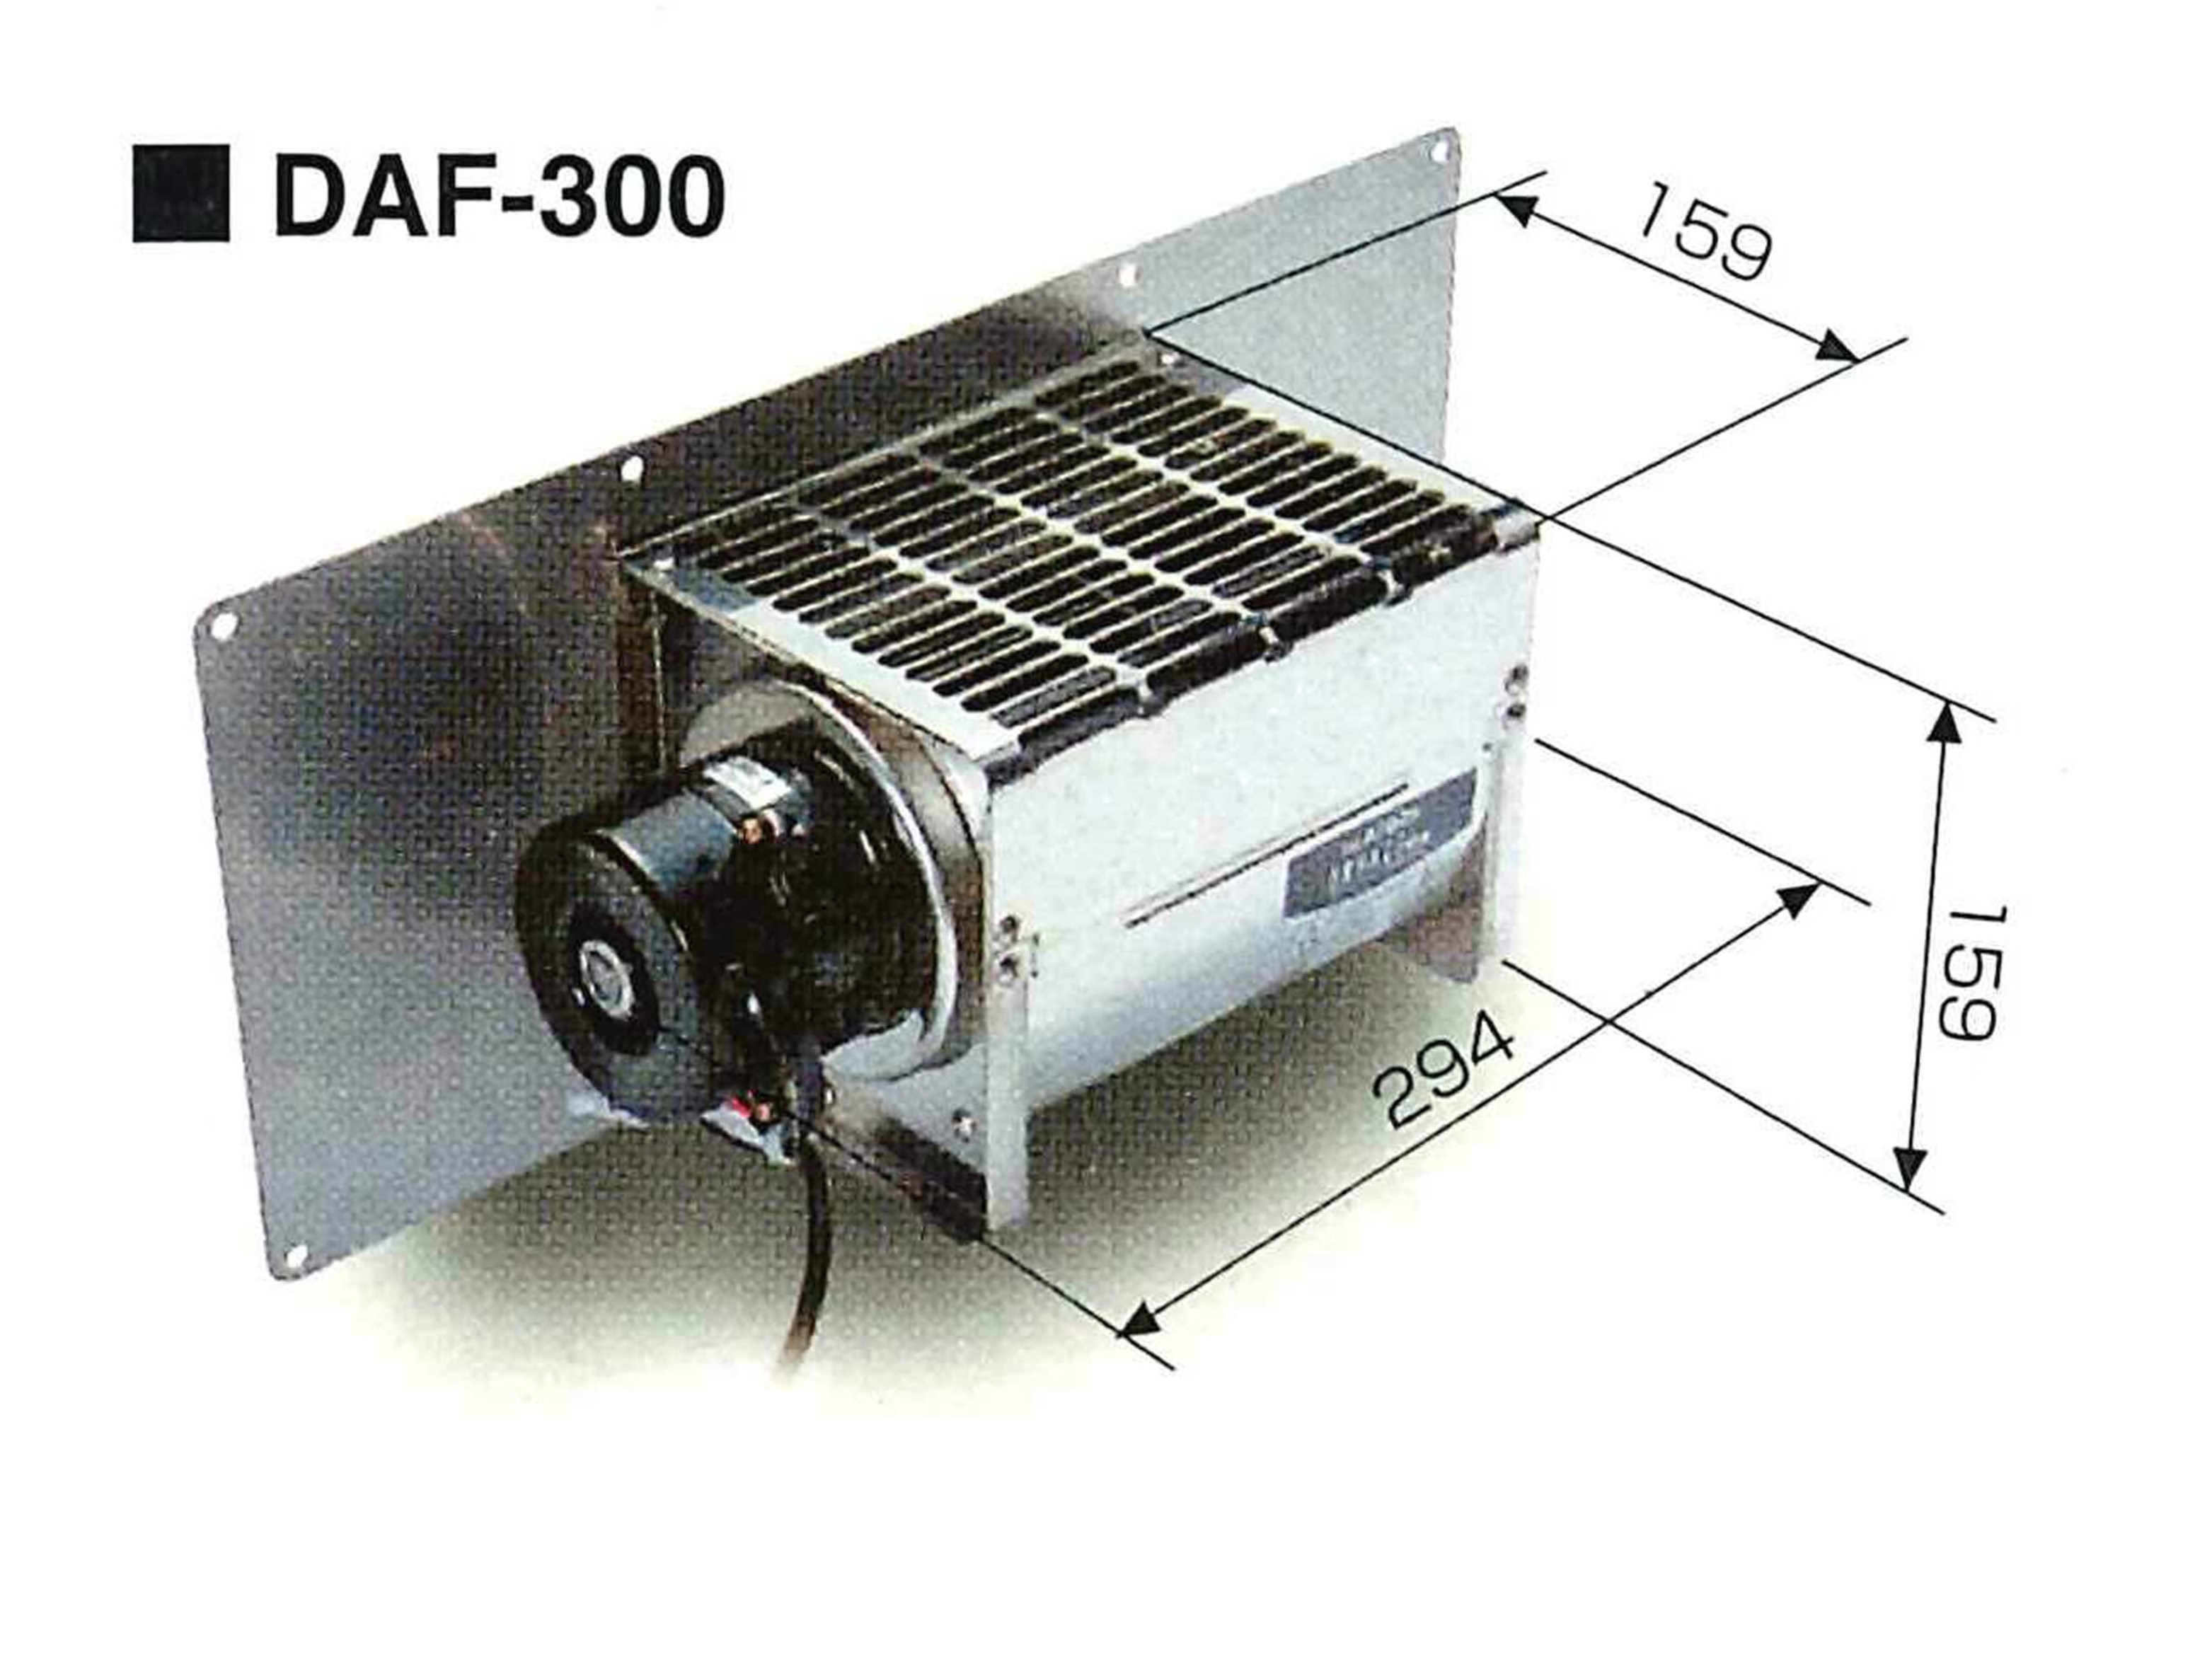 DAF-300